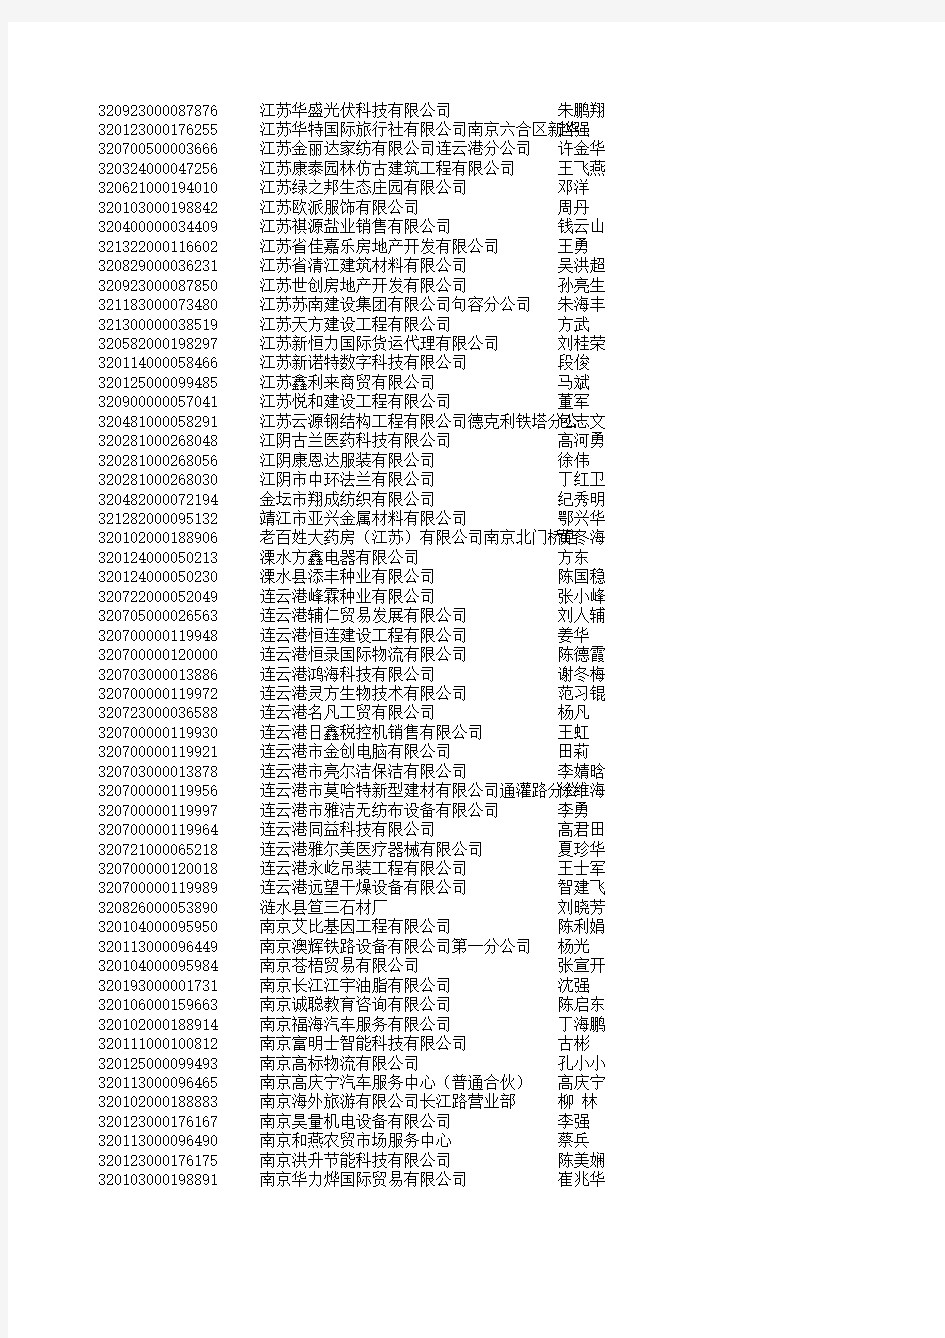 2010年02月江苏省工商注册企业名录(5588家)3